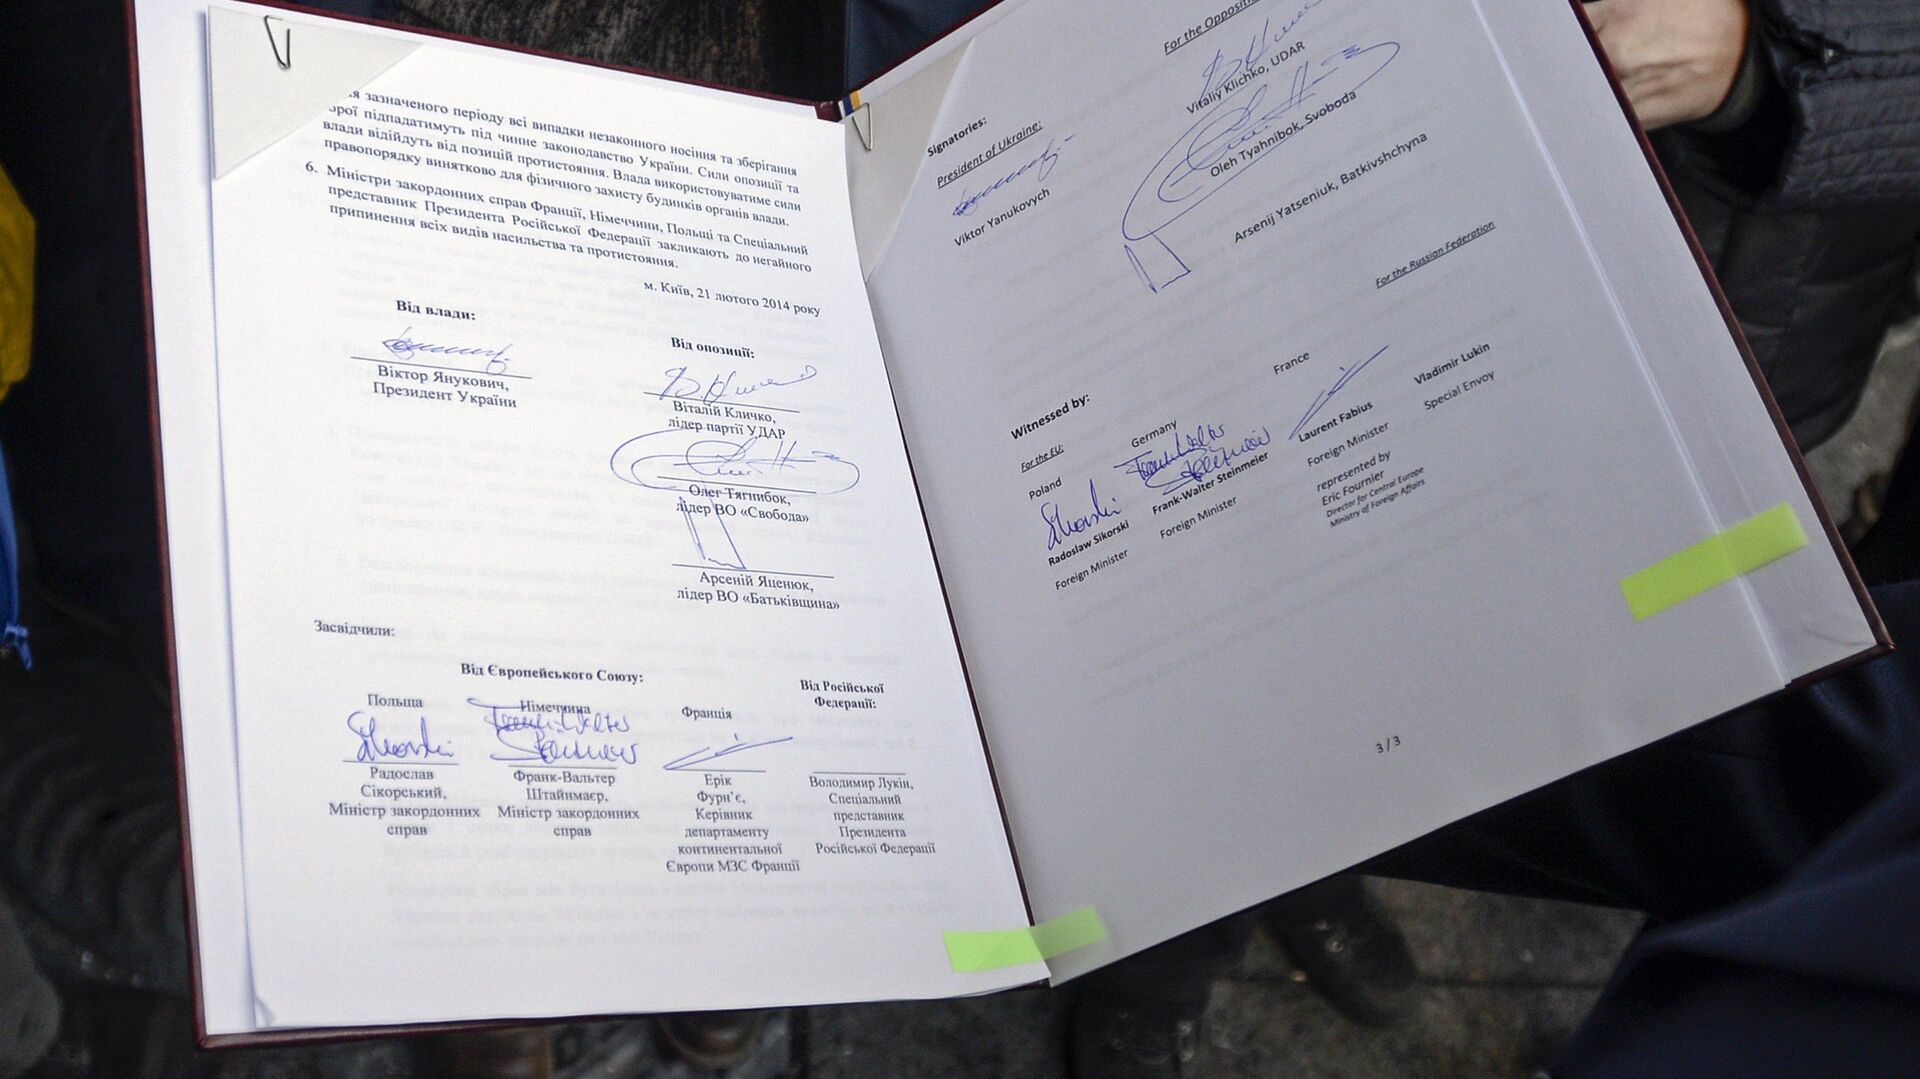 Мирное соглашение между президентом Украины Виктором Януковичем и лидерами оппозиции, подписанное в Киеве 21 февраля 2014 - ИноСМИ, 1920, 22.02.2014